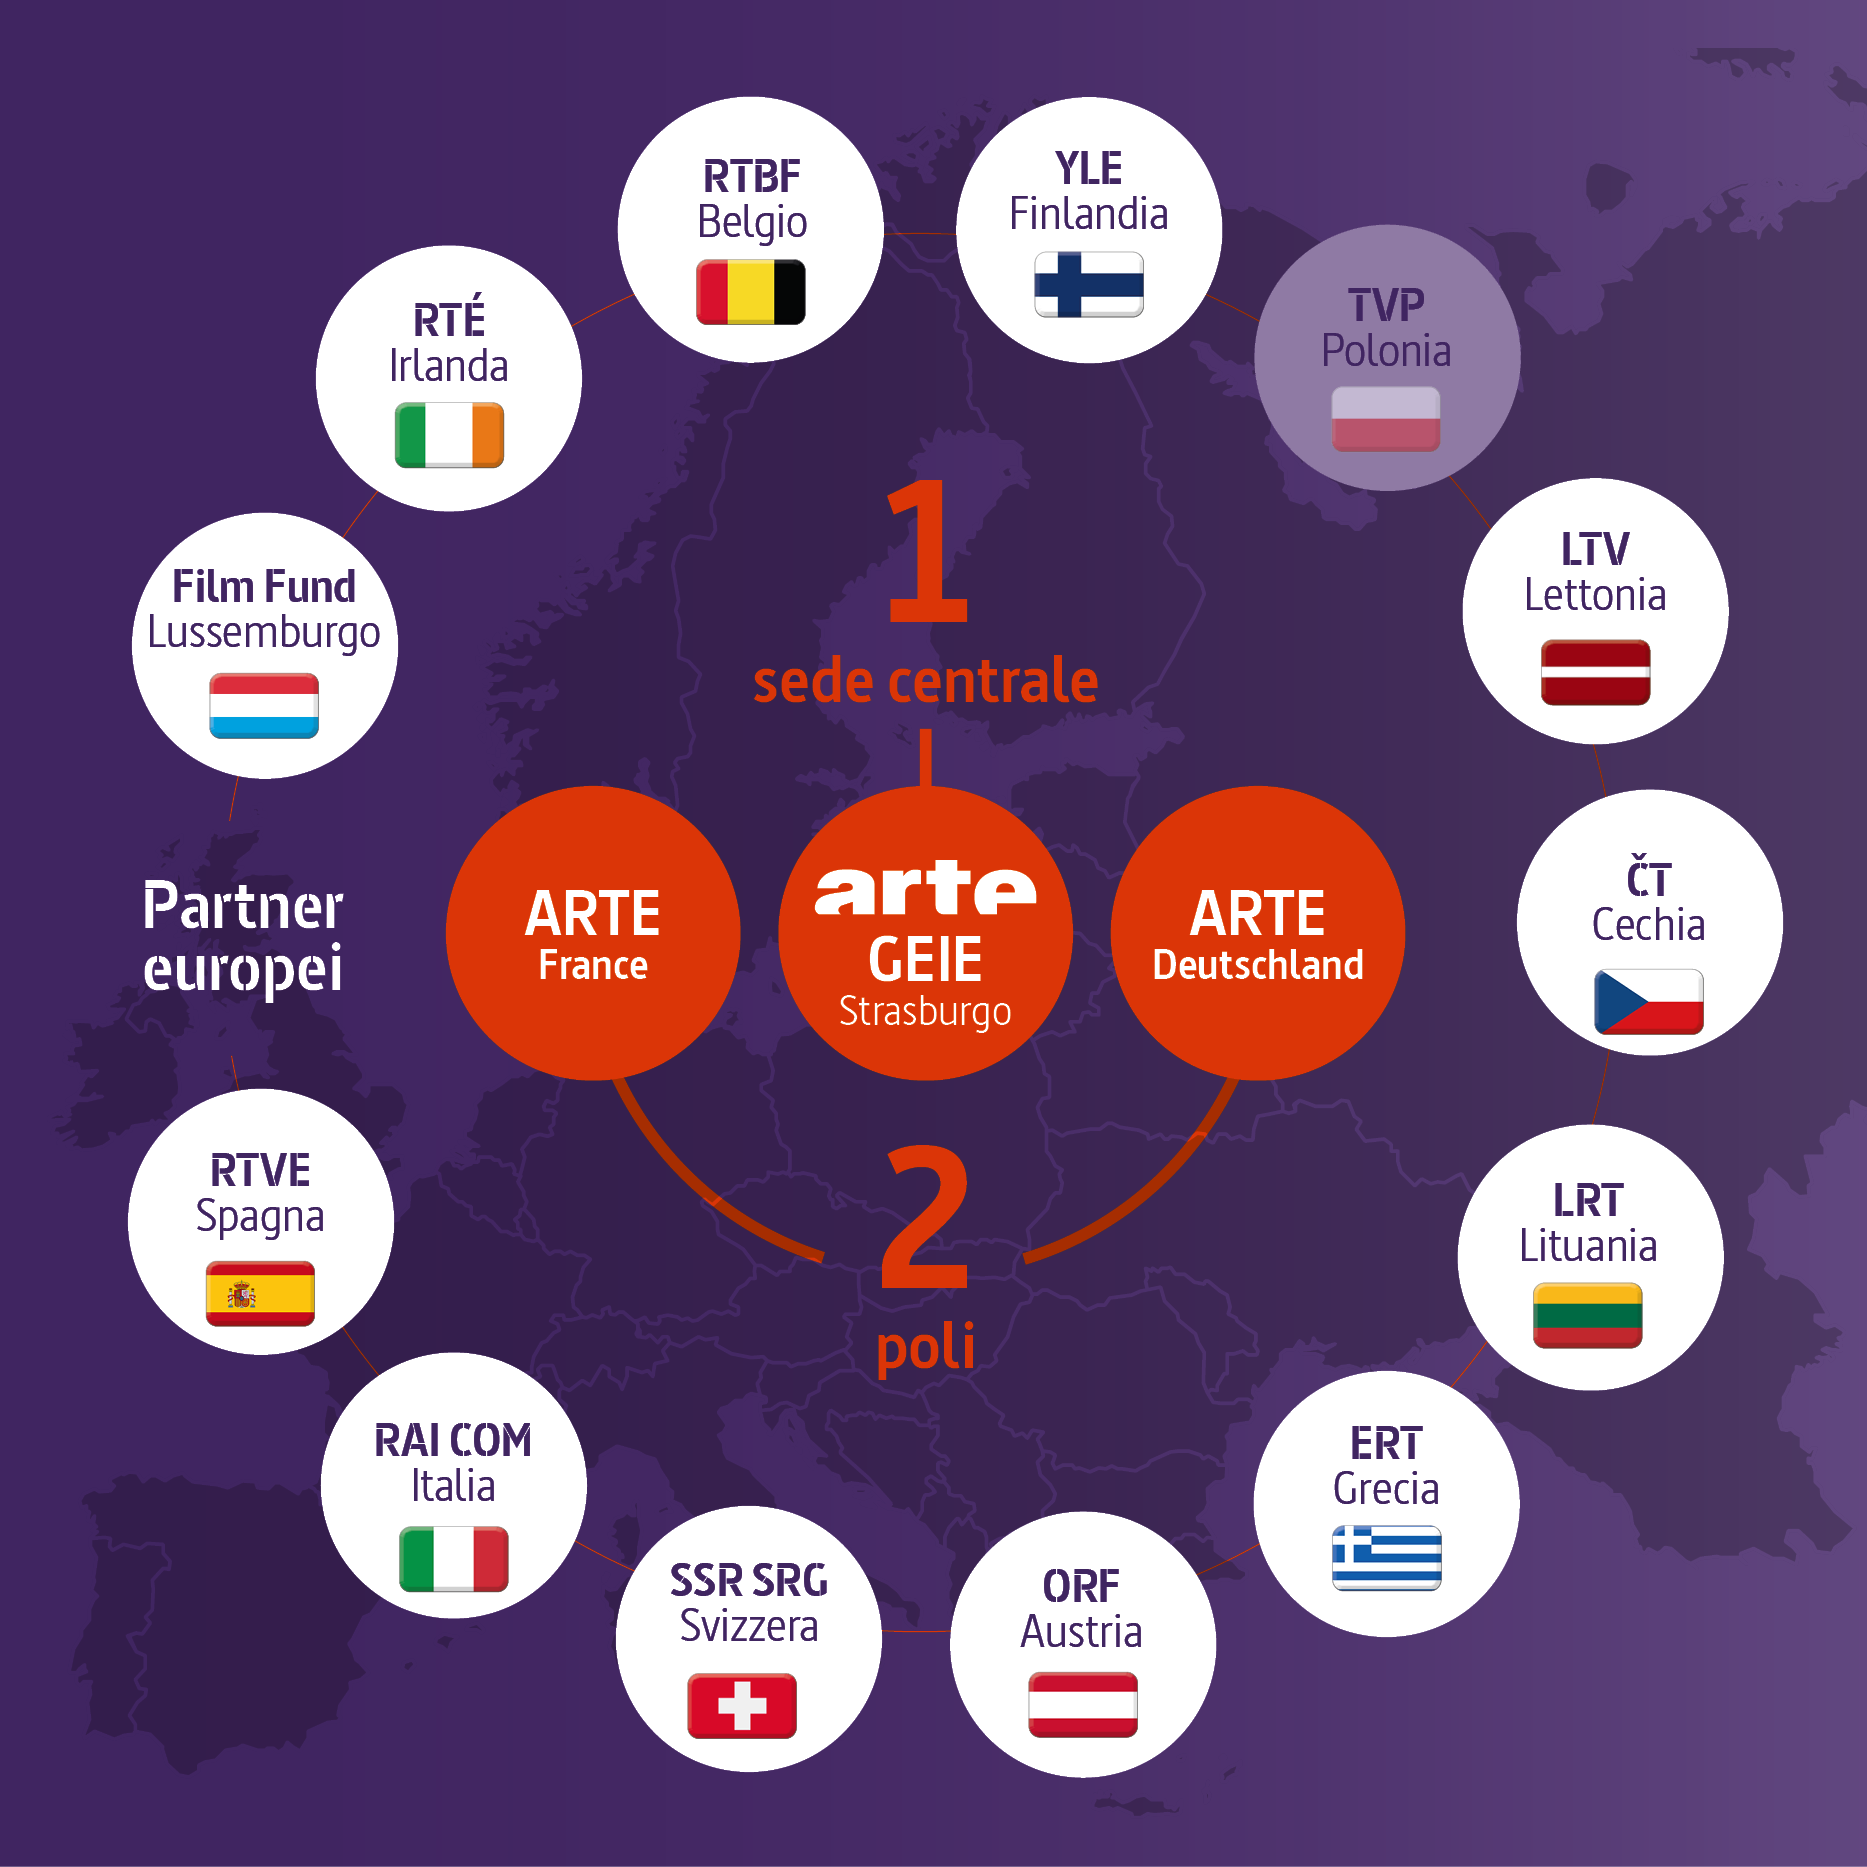 Davanti a una mappa dell'Europa, al centro si trova la sede di ARTE GEIE a Strasburgo. Accanto, i due poli ARTE Deutschland e ARTE France.
Intorno al Gruppo ARTE si trovano i partner europei: il Film Fund Lussemburgo, RTÉ in Irlanda, RTBF in Belgio, YLE in Finlandia, TVP in Polonia (tratteggiata), LTV in Lettonia, ČT nella Repubblica Ceca, LRT in Lituania, ERT in Grecia, ORF in Austria, SSR SRG in Svizzera, RAI Com in Italia e RTVE in Spagna.